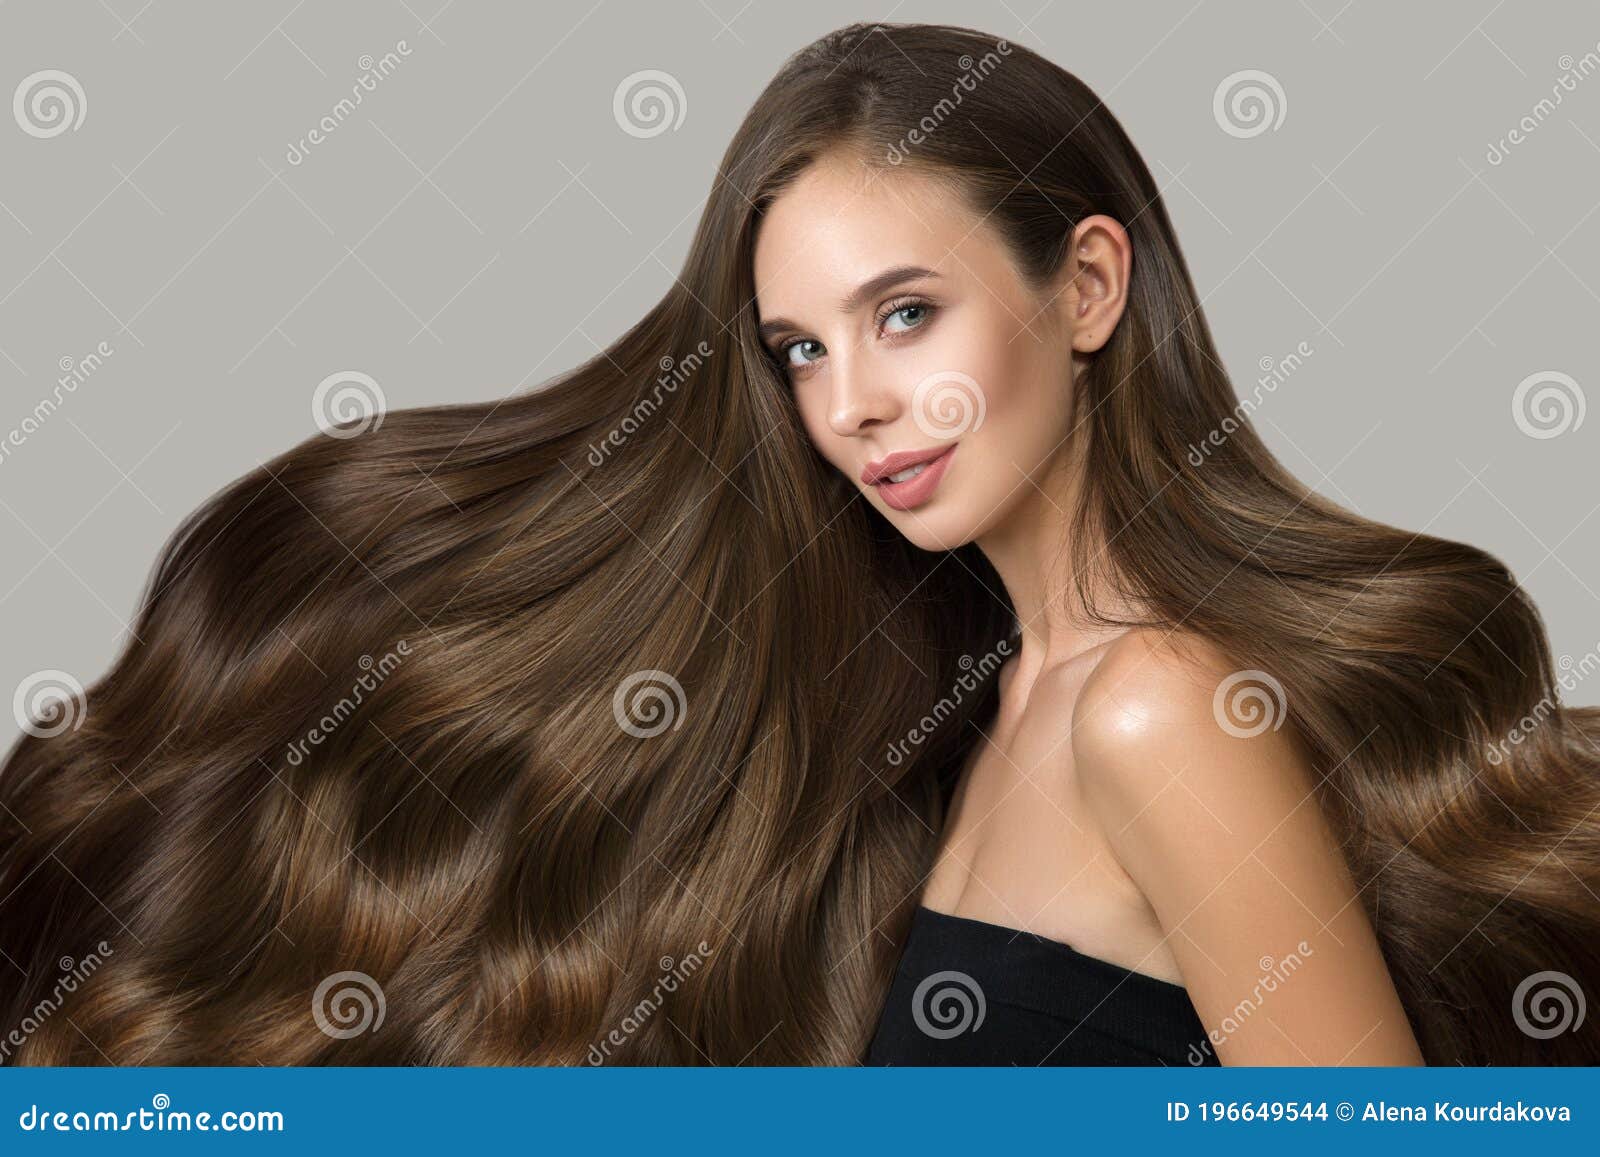 Longest Hair in the World Guinness World Record  Longest Hair  Hair  Records  HerZindagi